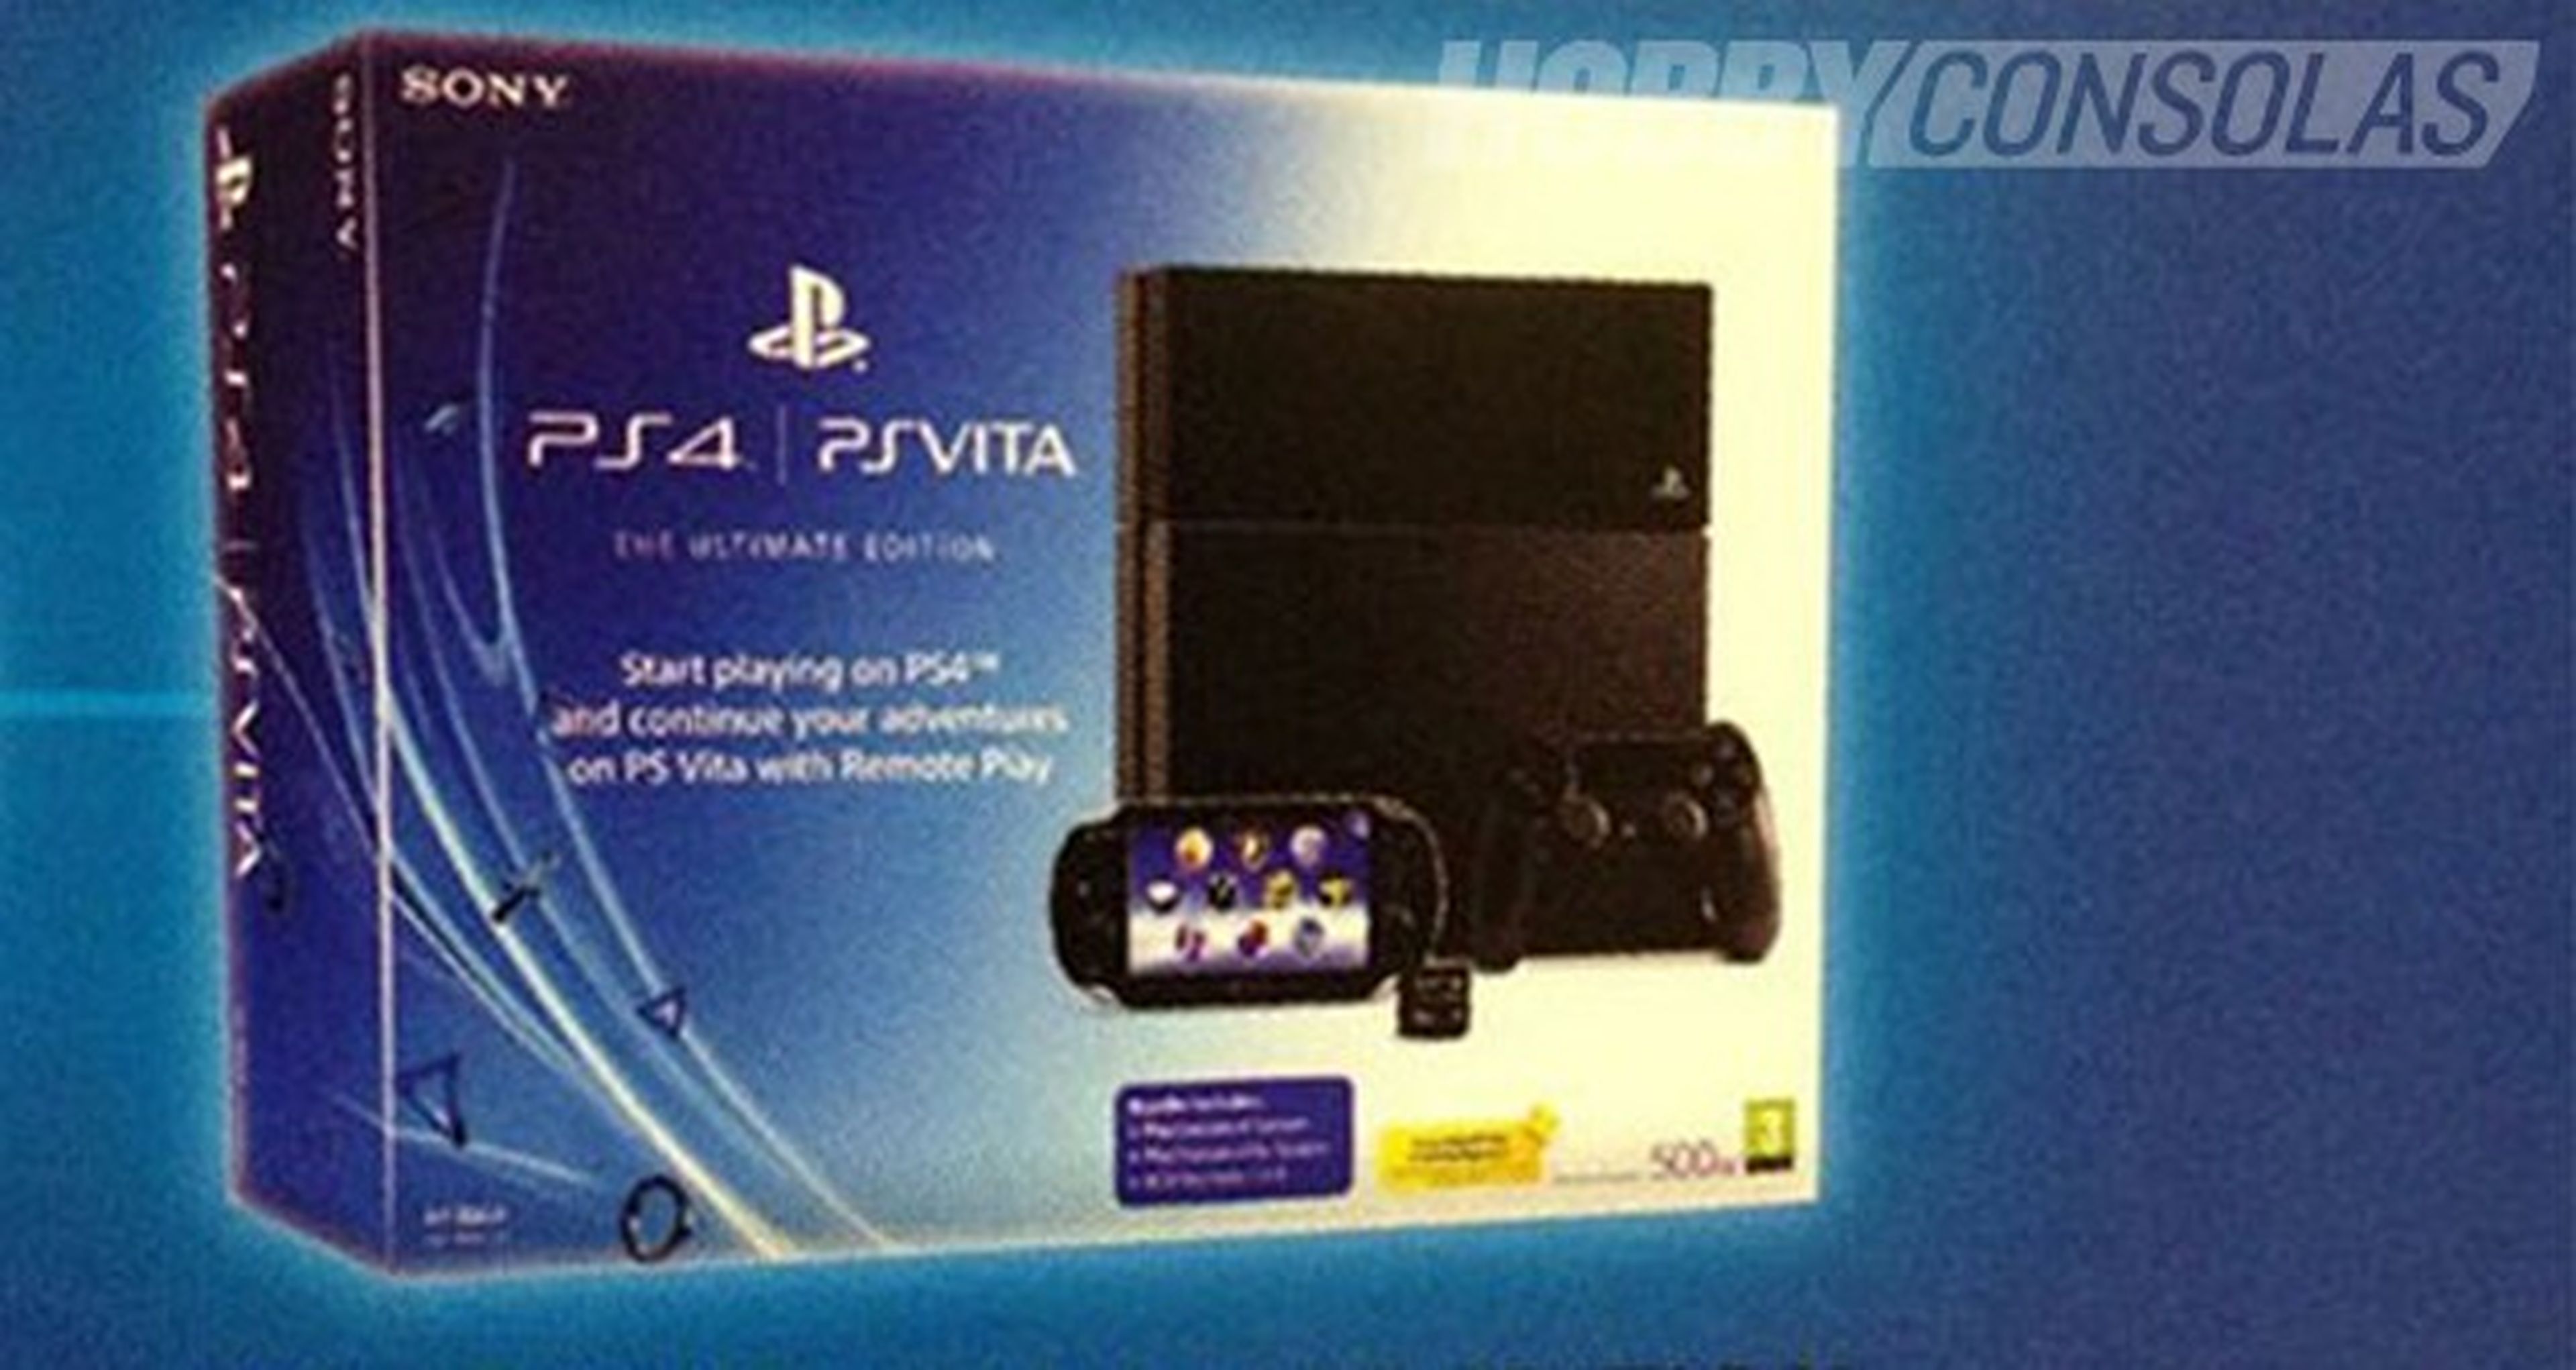 El pack de PS4+Vita ya tiene precio en Reino Unido